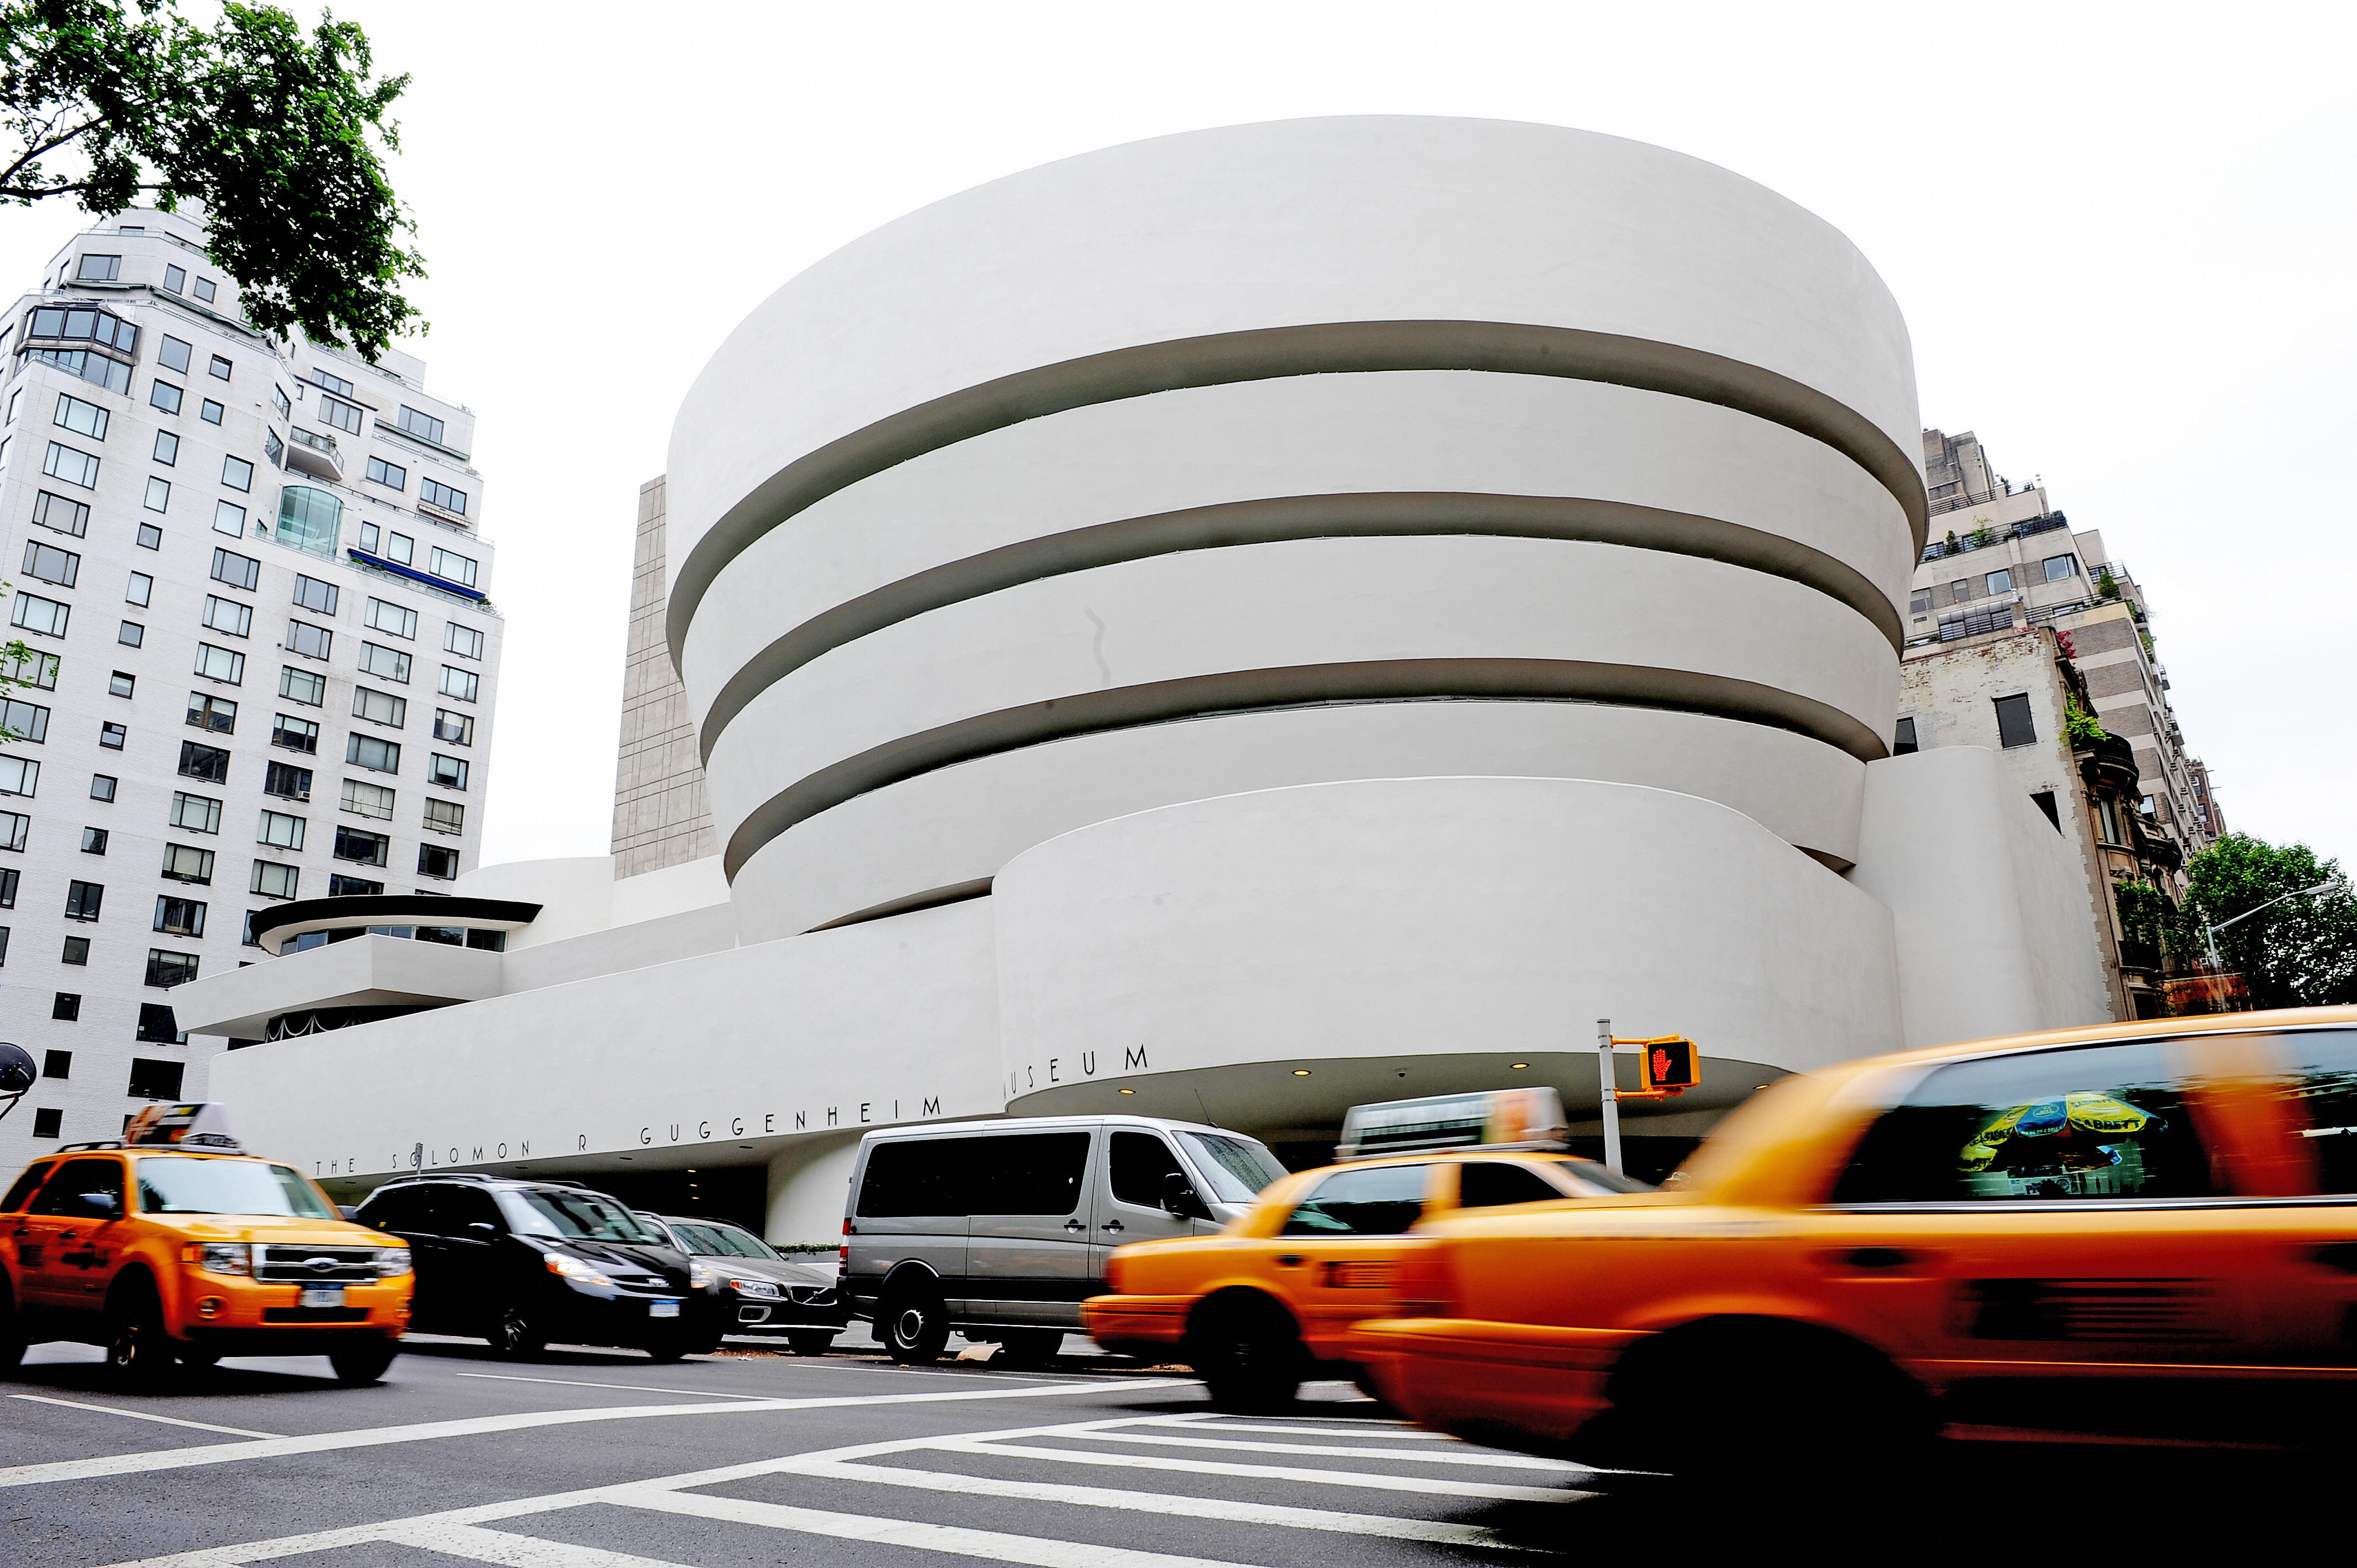 Museo Guggenheim a New York: orari, biglietti e tutte le informazioni utili per visitarlo